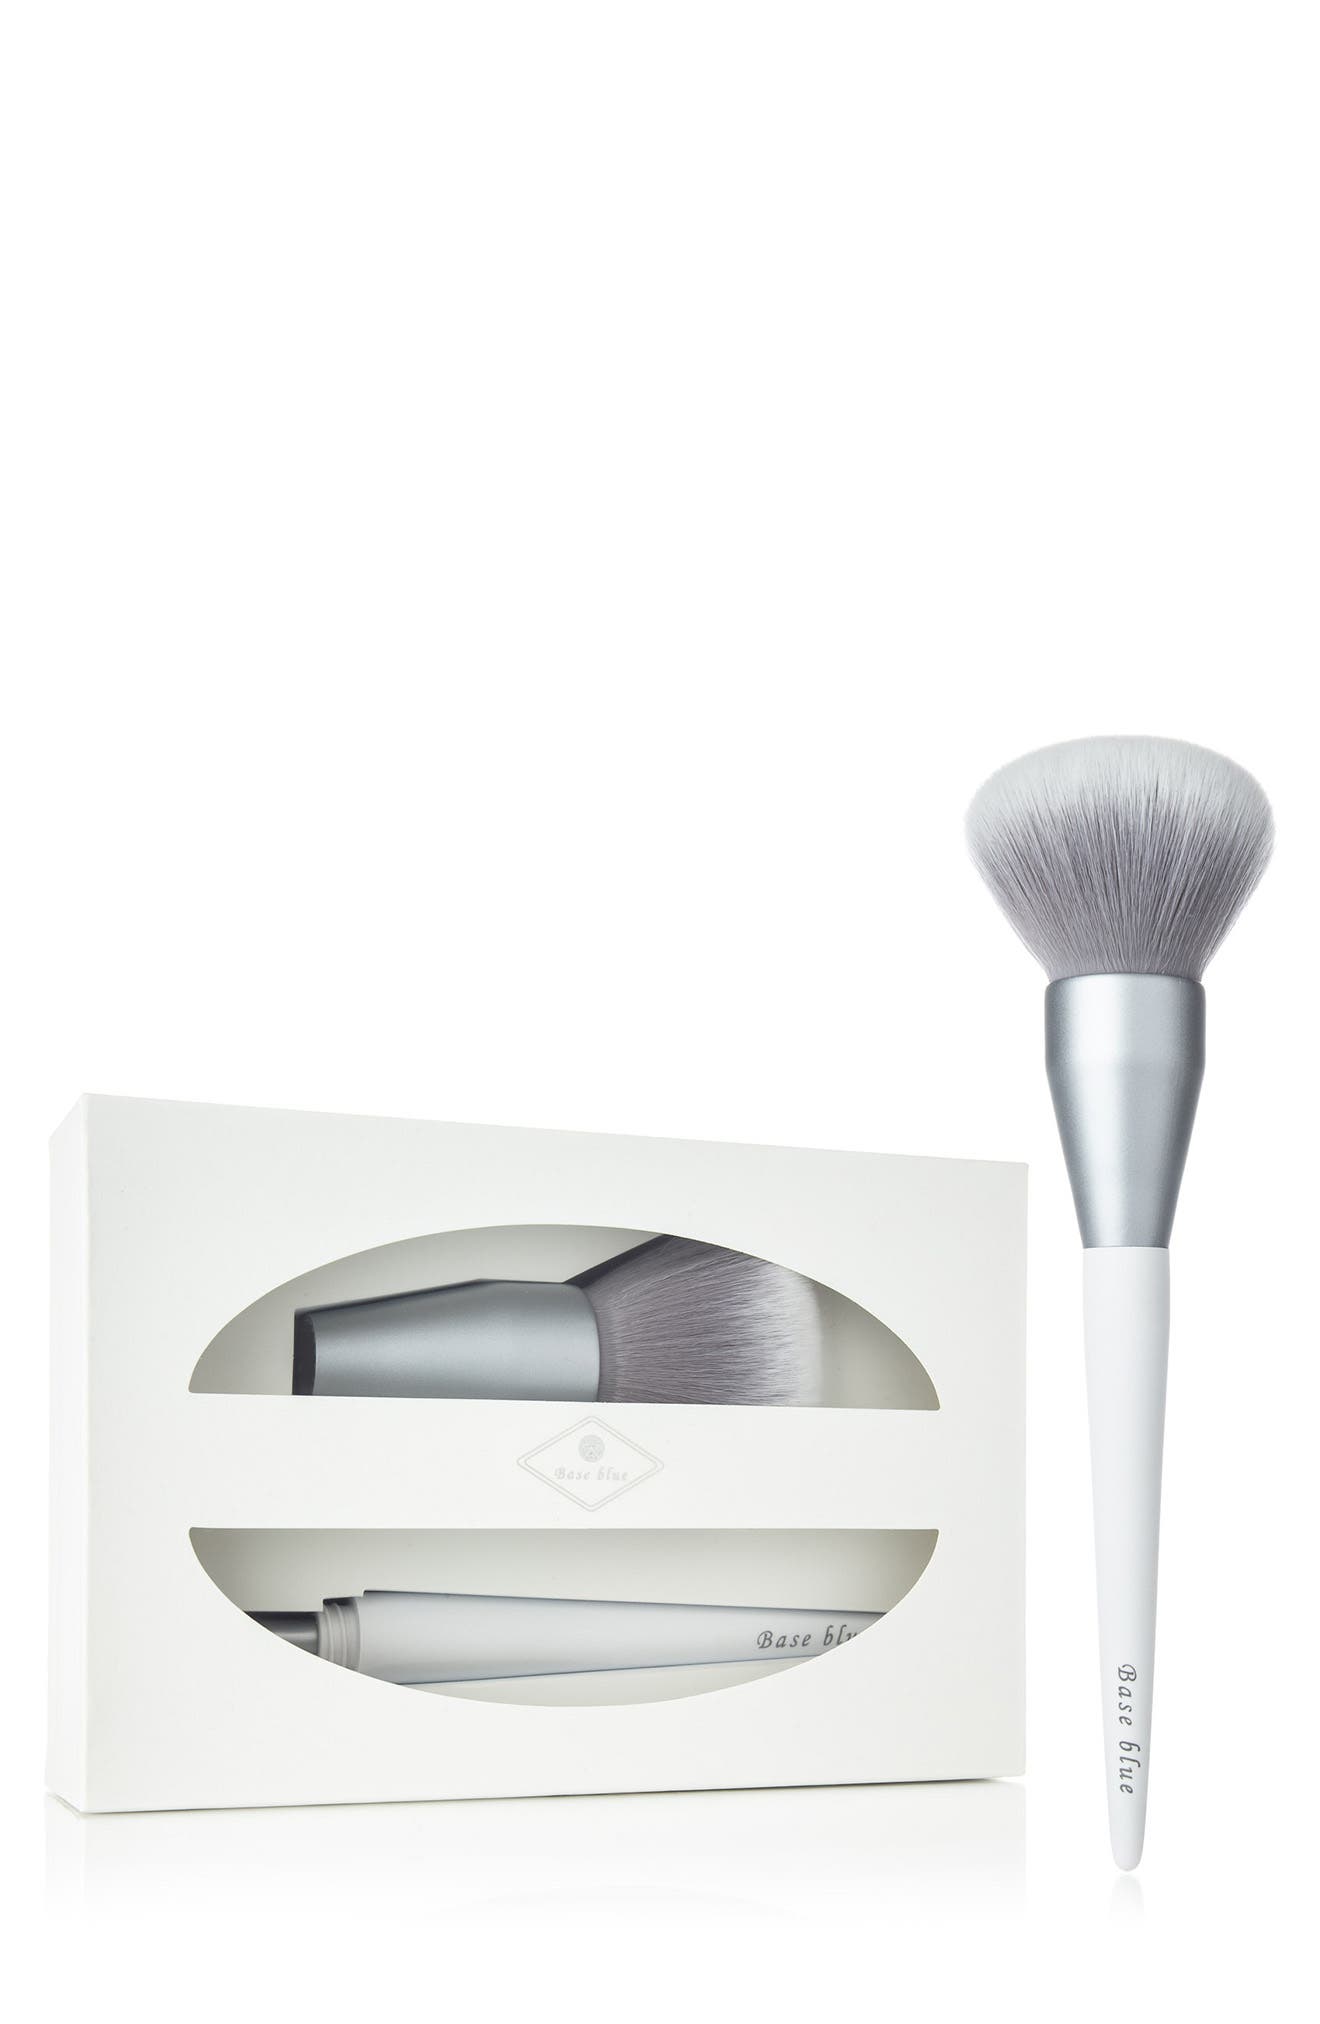 Yuka Skincare 2-in-1 Eyeshadow & Powder Brush "a" W/ Airsponge Full Coverage Makeup Blender